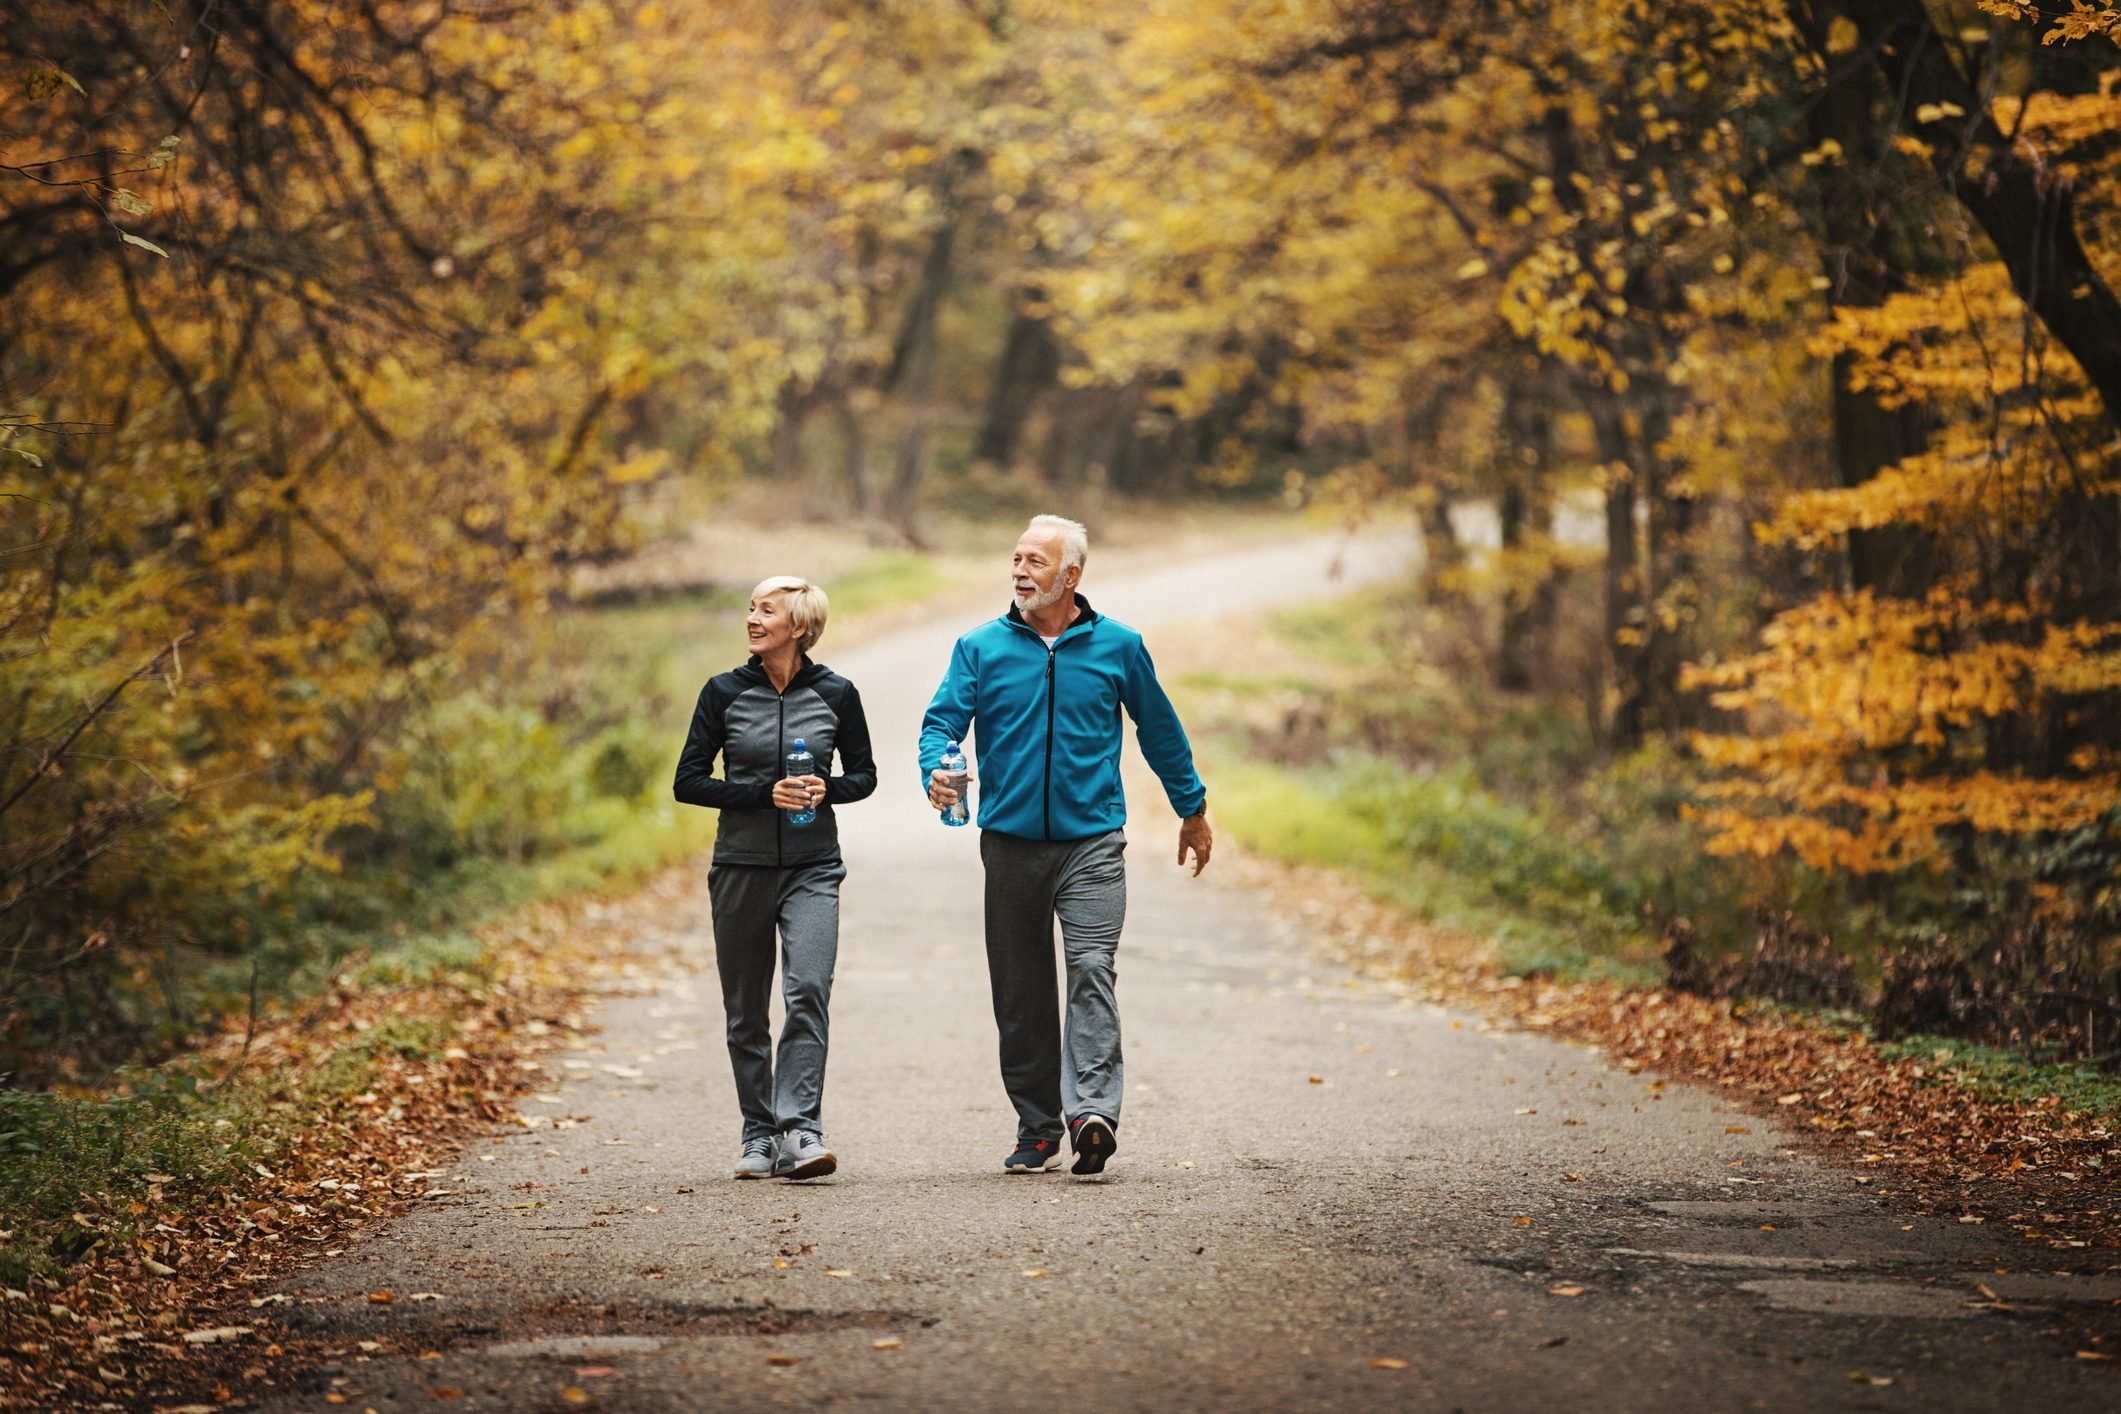 Περπάτημα οφέλη υγεία: 3 καλοί λόγοι για να περπατάτε περισσότερο κάθε μέρα [vid]